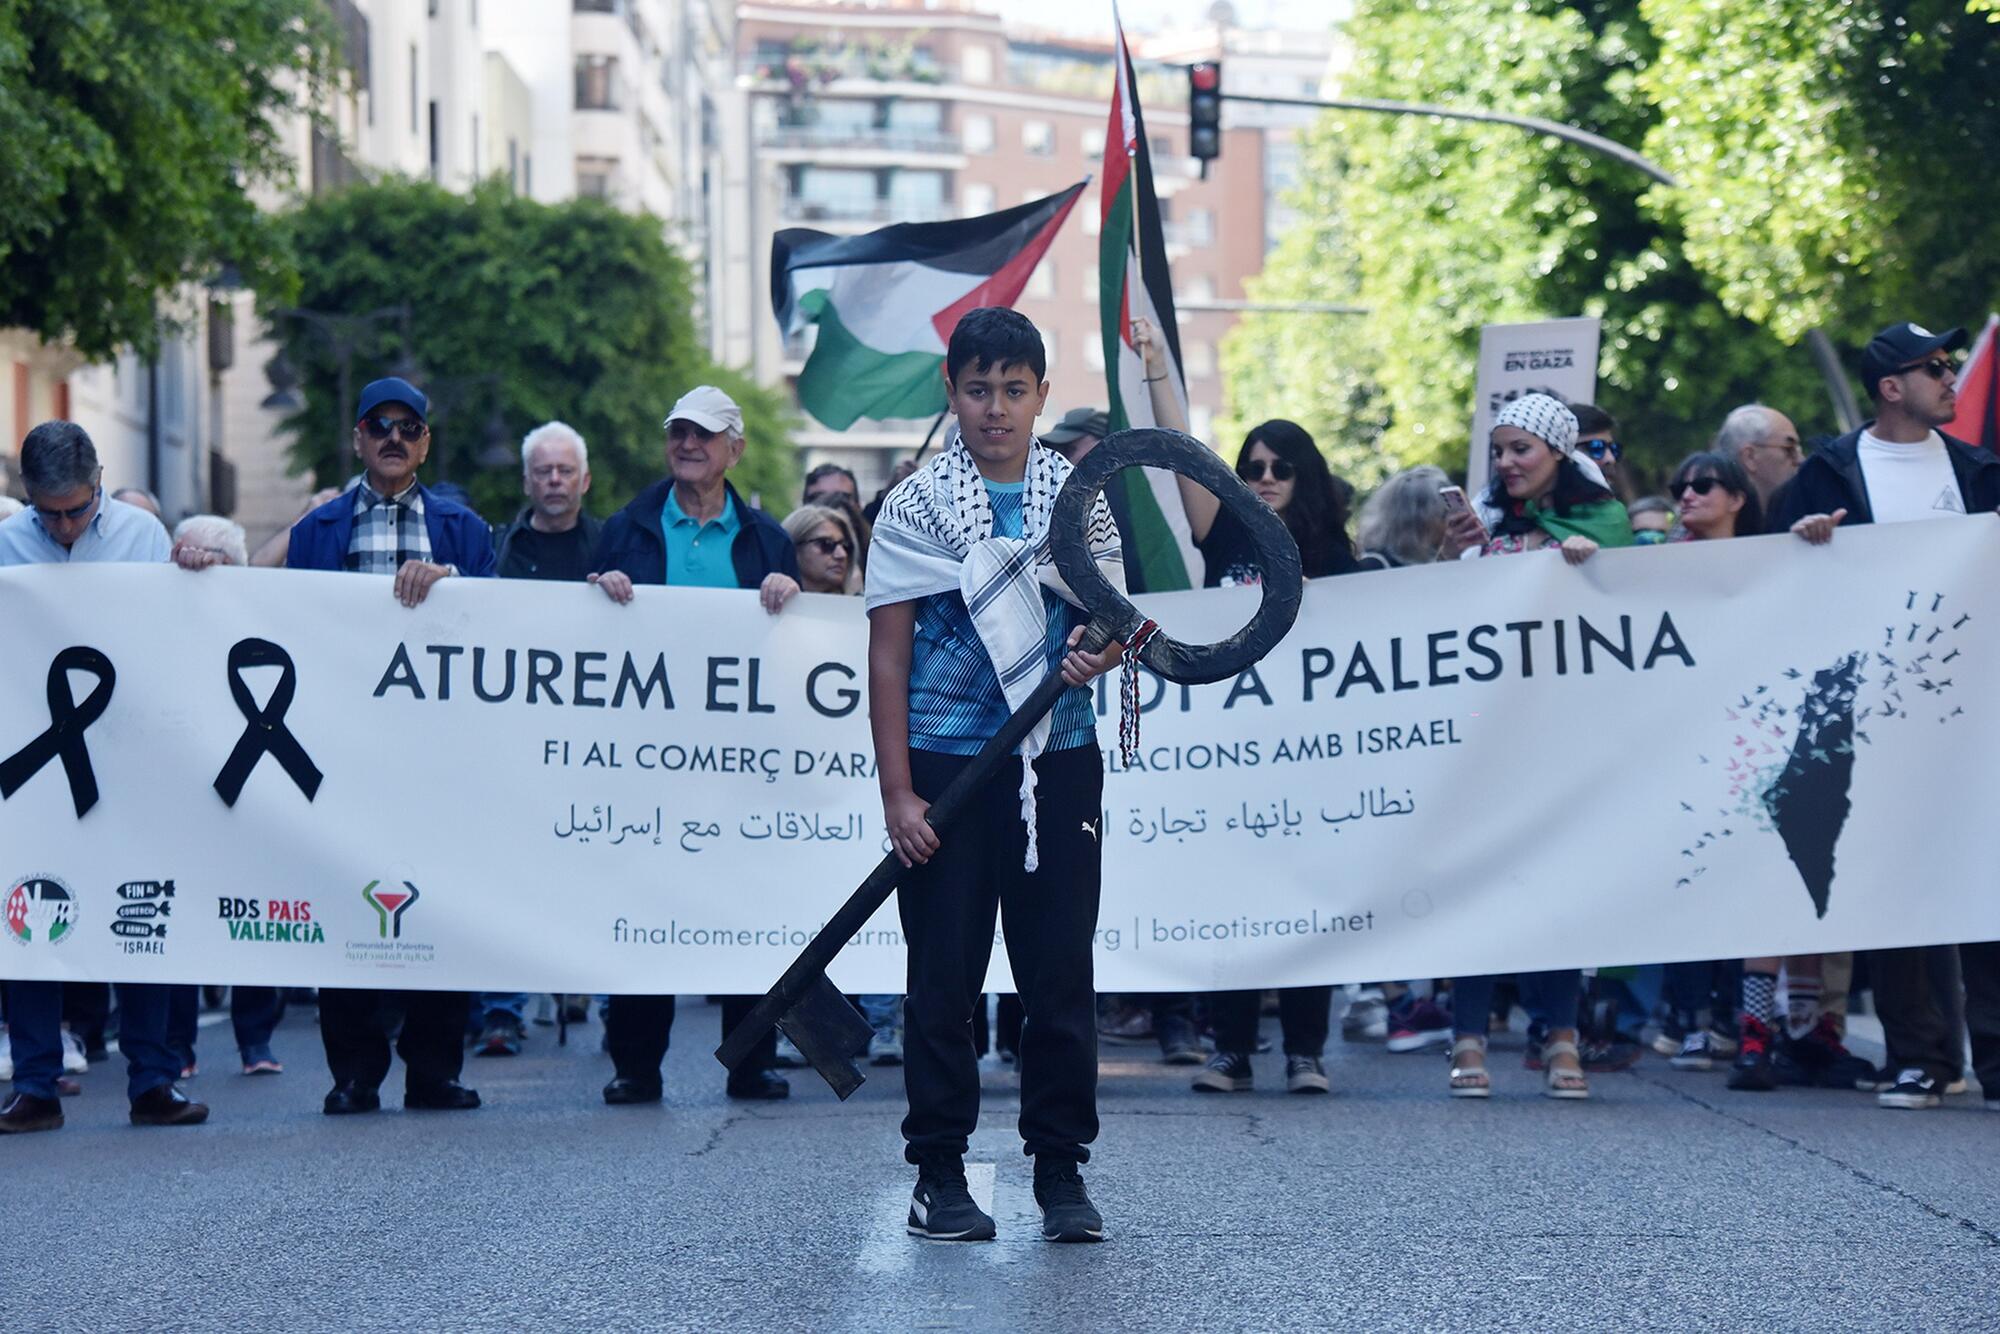 Manifestaciones País Valenciá solidaridad con Palestina 20-21 abril  - 10